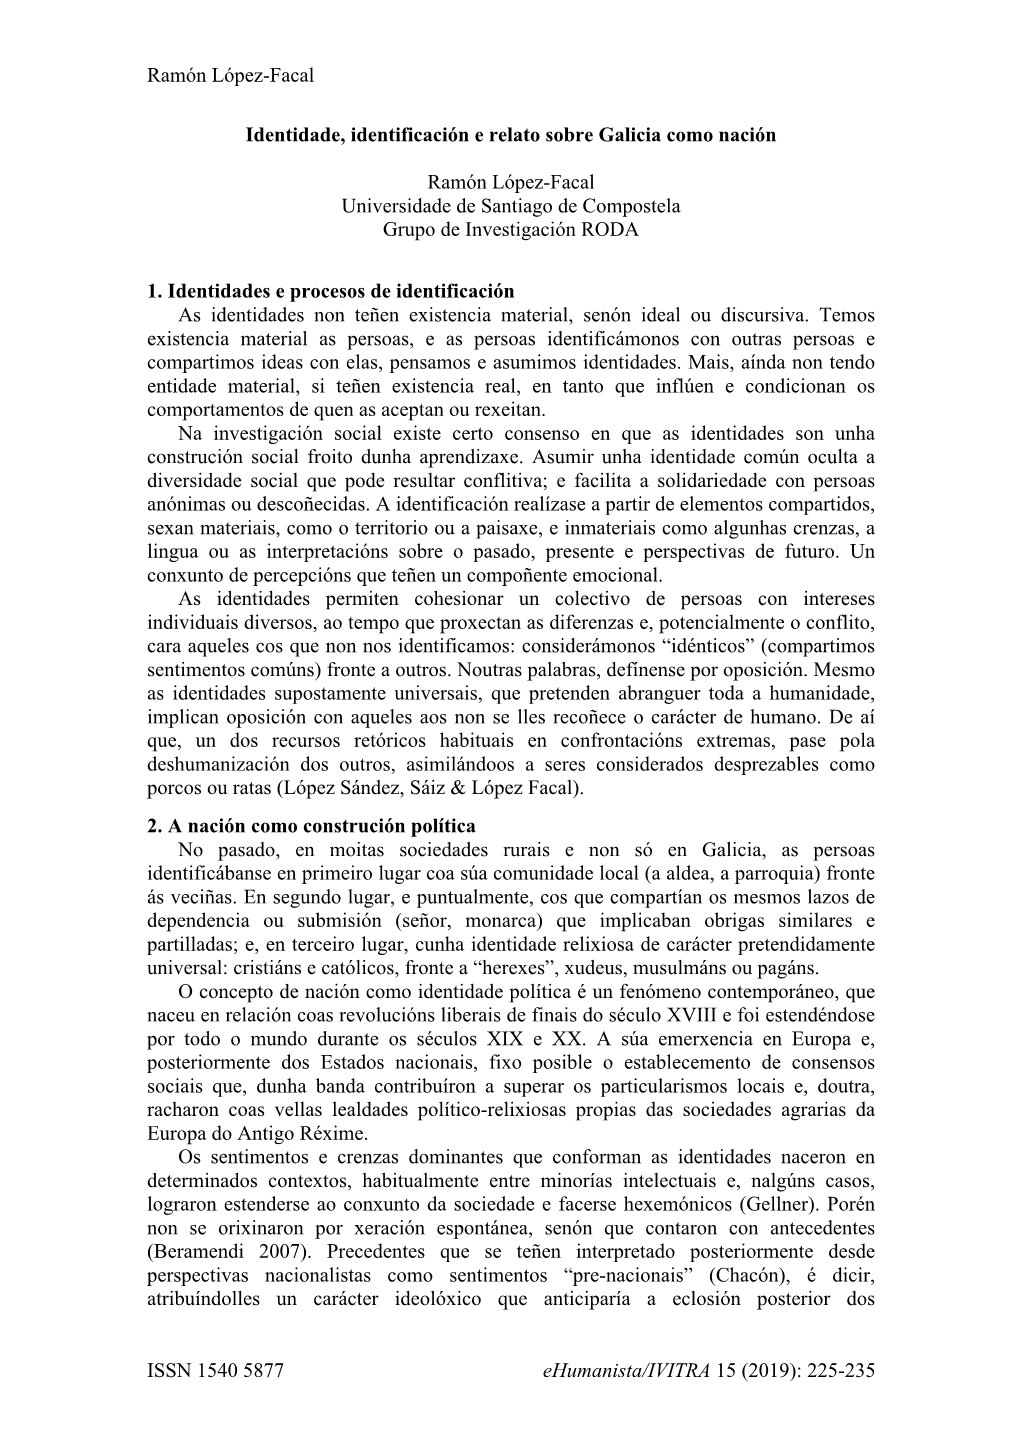 Ramón López-Facal ISSN 1540 5877 Ehumanista/IVITRA 15 (2019): 225-235 Identidade, Identificación E Relato Sobre Galicia Como